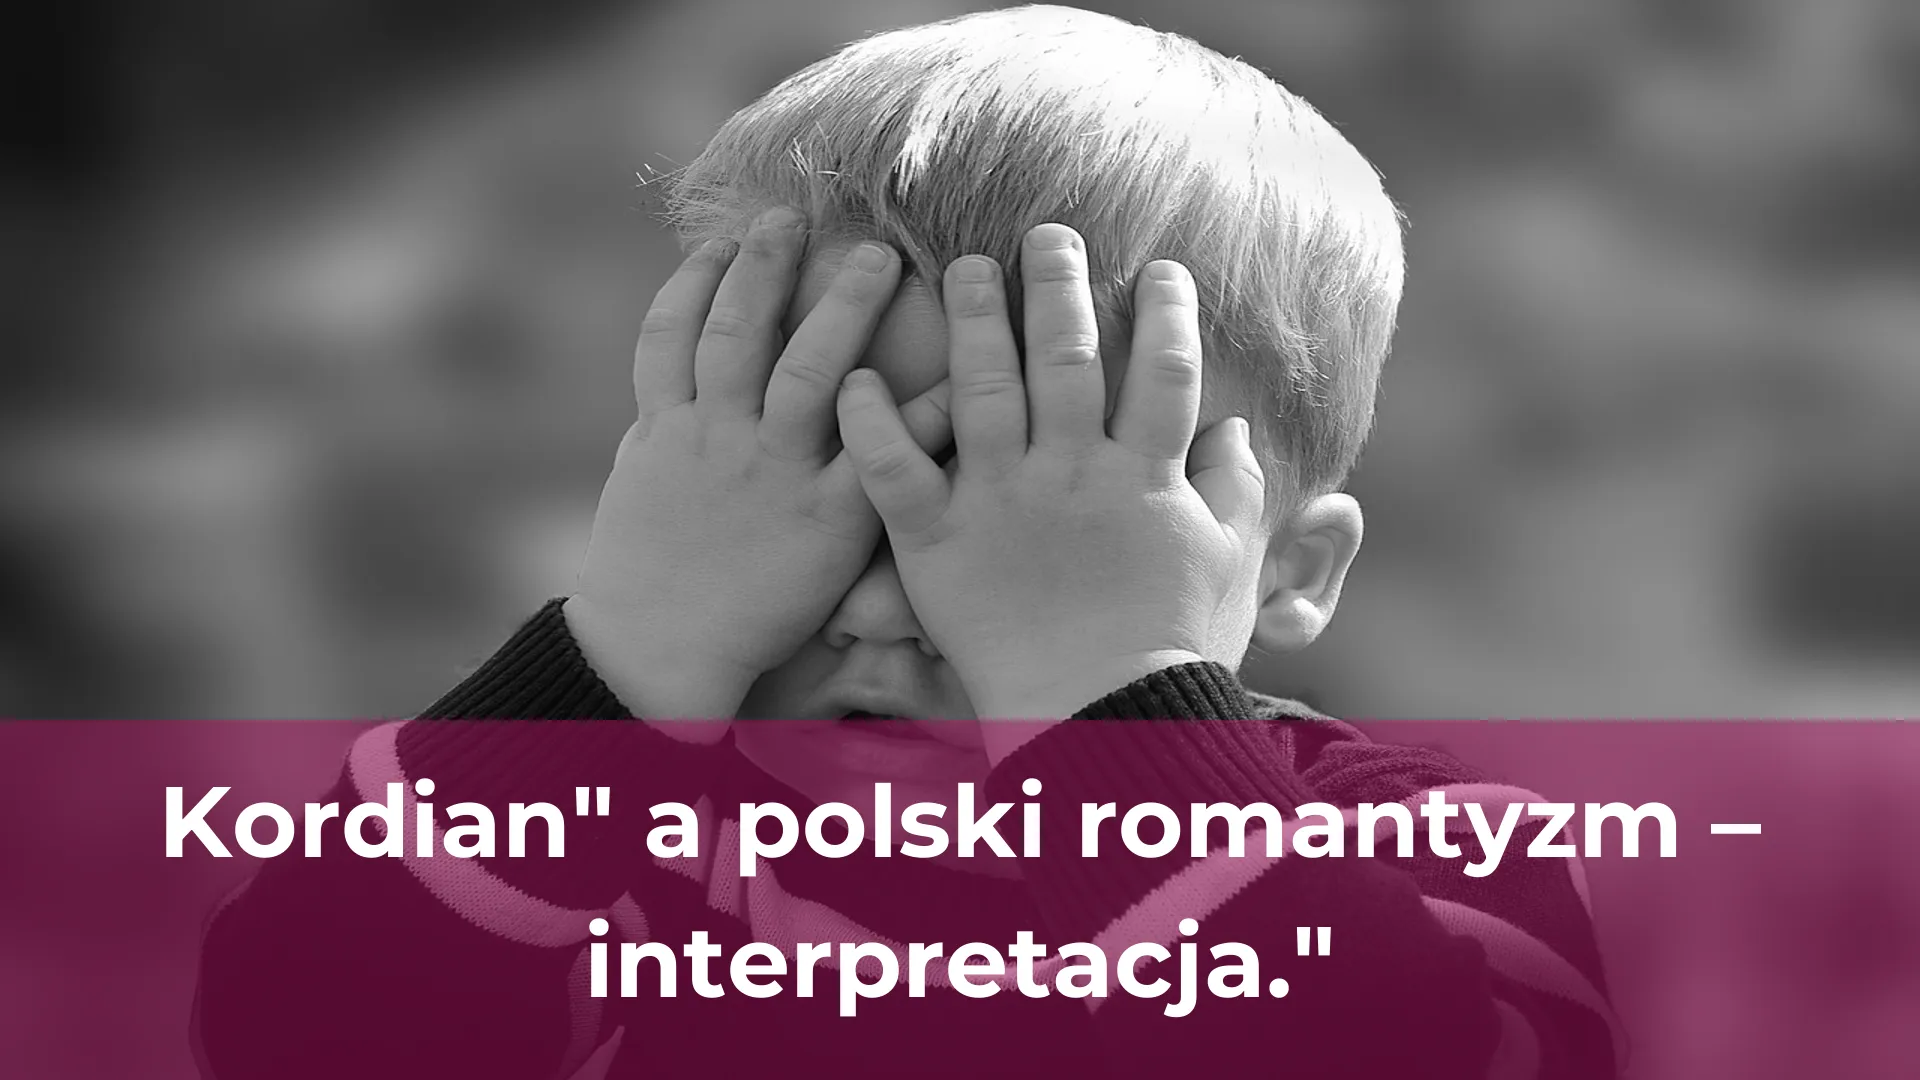 Kordian a polski romantyzm interpretacja